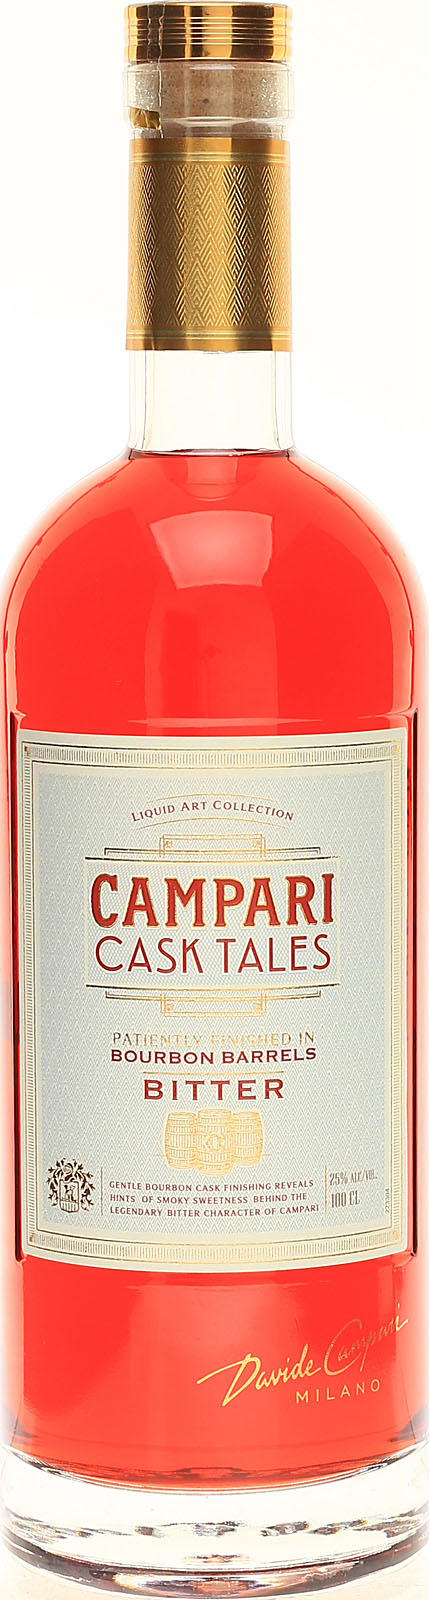 Campari Cask 1,0 25 Liter Tales 